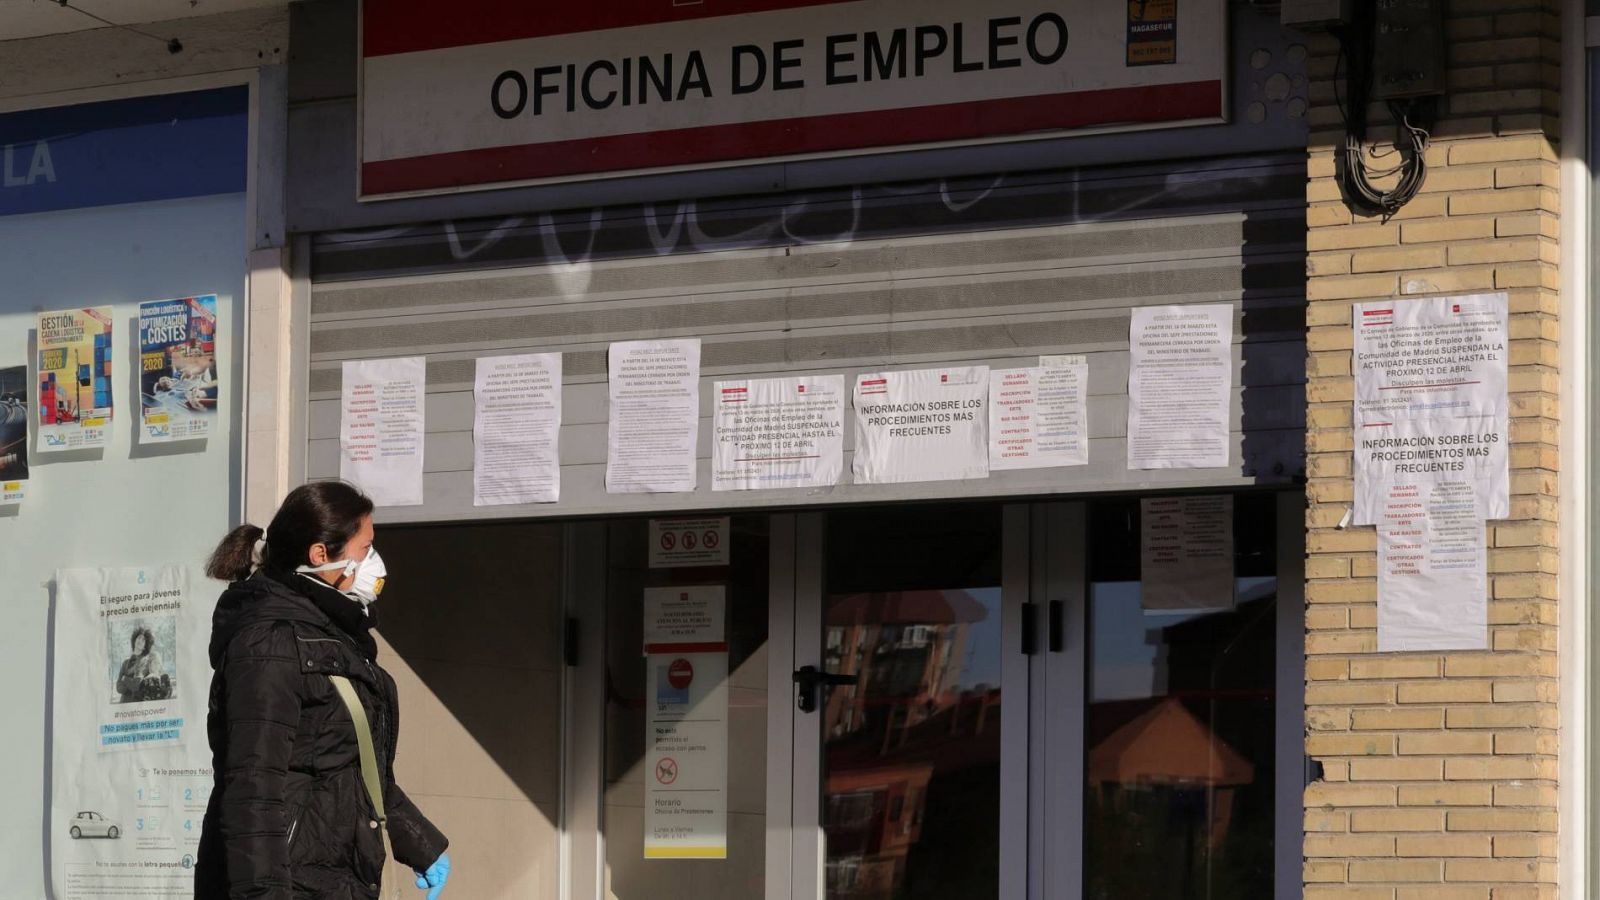 El paro aumenta en 5.107 desempleados en junio, hasta los 3.862.883 parados registrados - RTVE.es